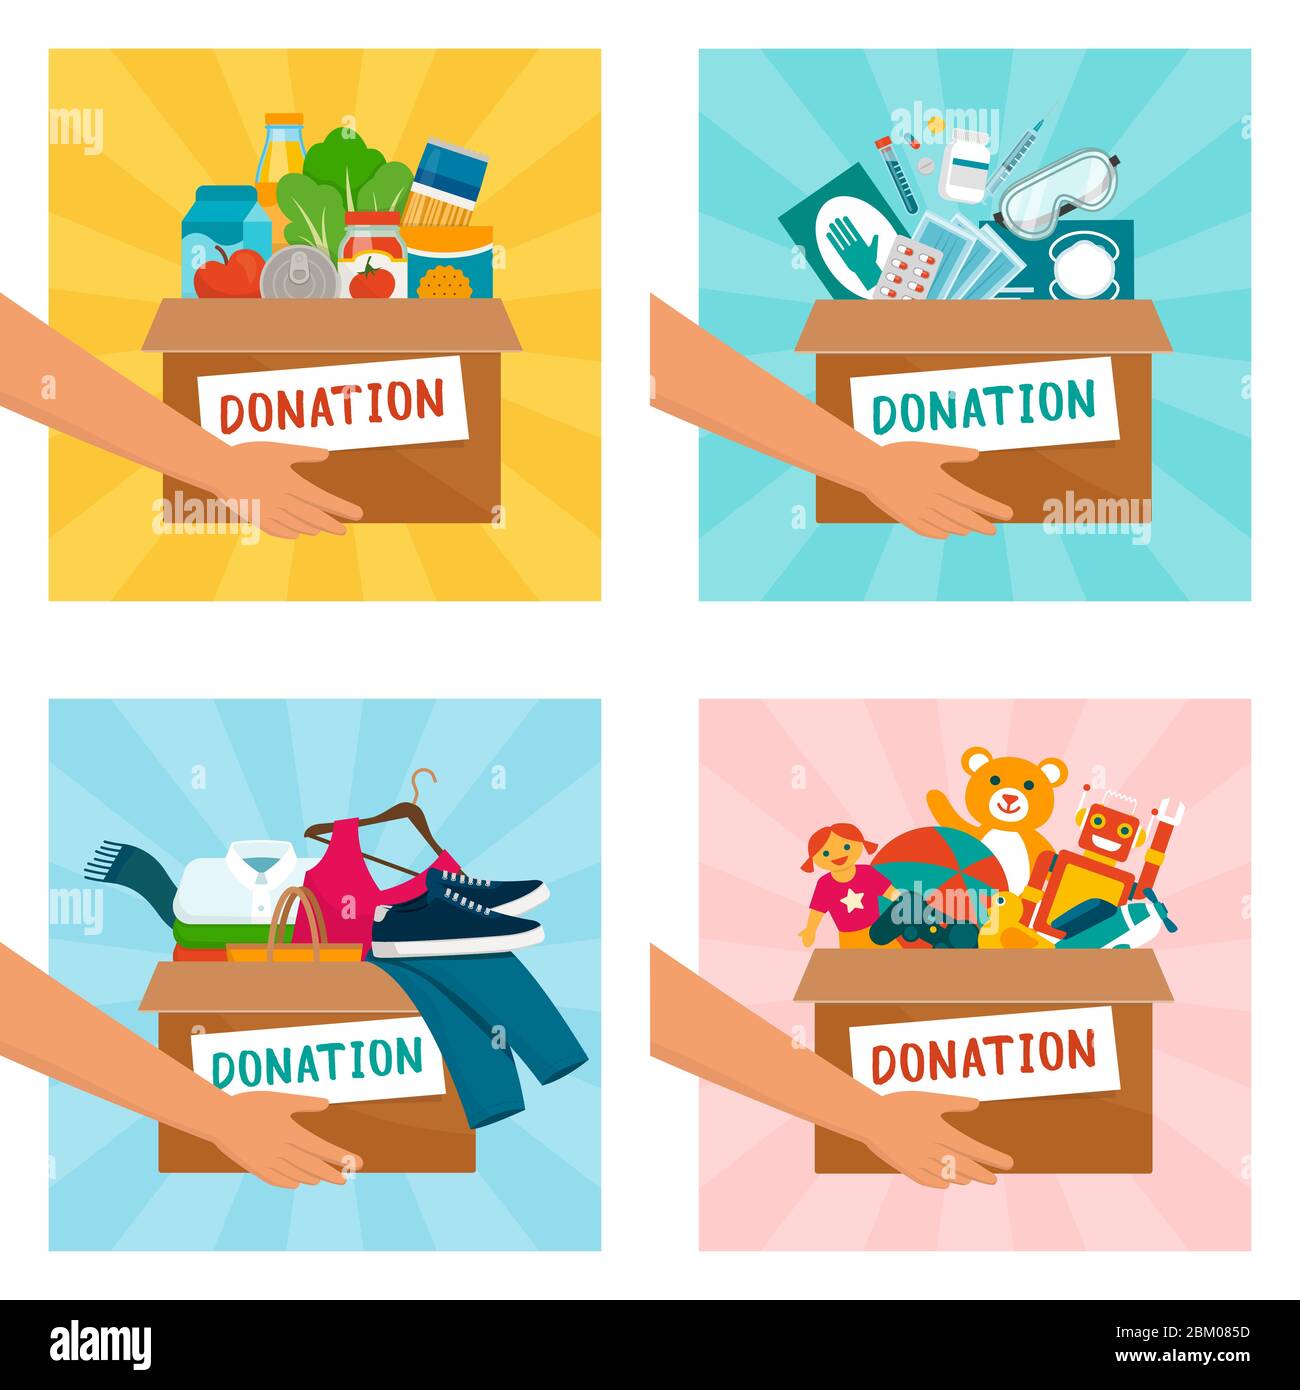 Voluntarios que tienen cajas de donación con alimentos, equipo médico, ropa y juguetes Ilustración del Vector